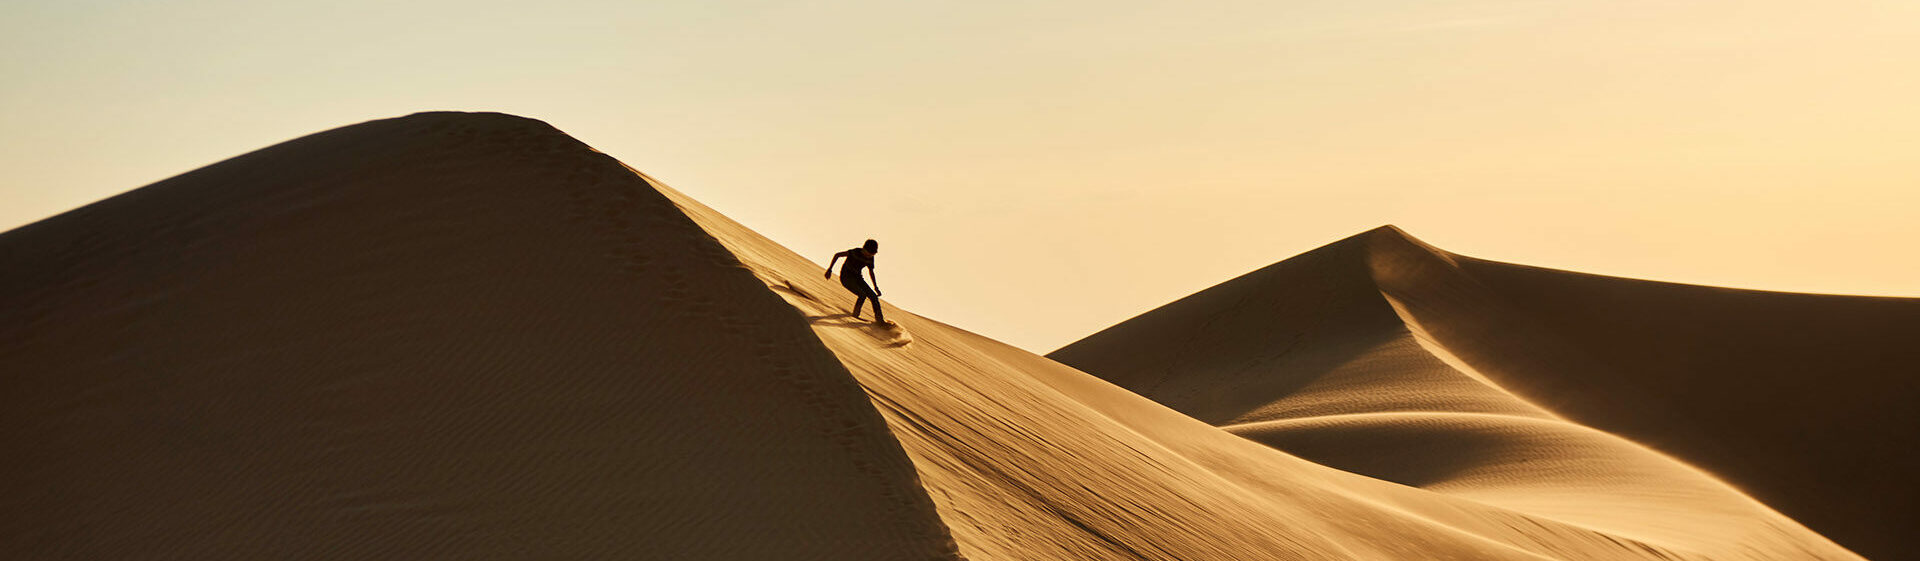 Sandboarding in Desert Morocco